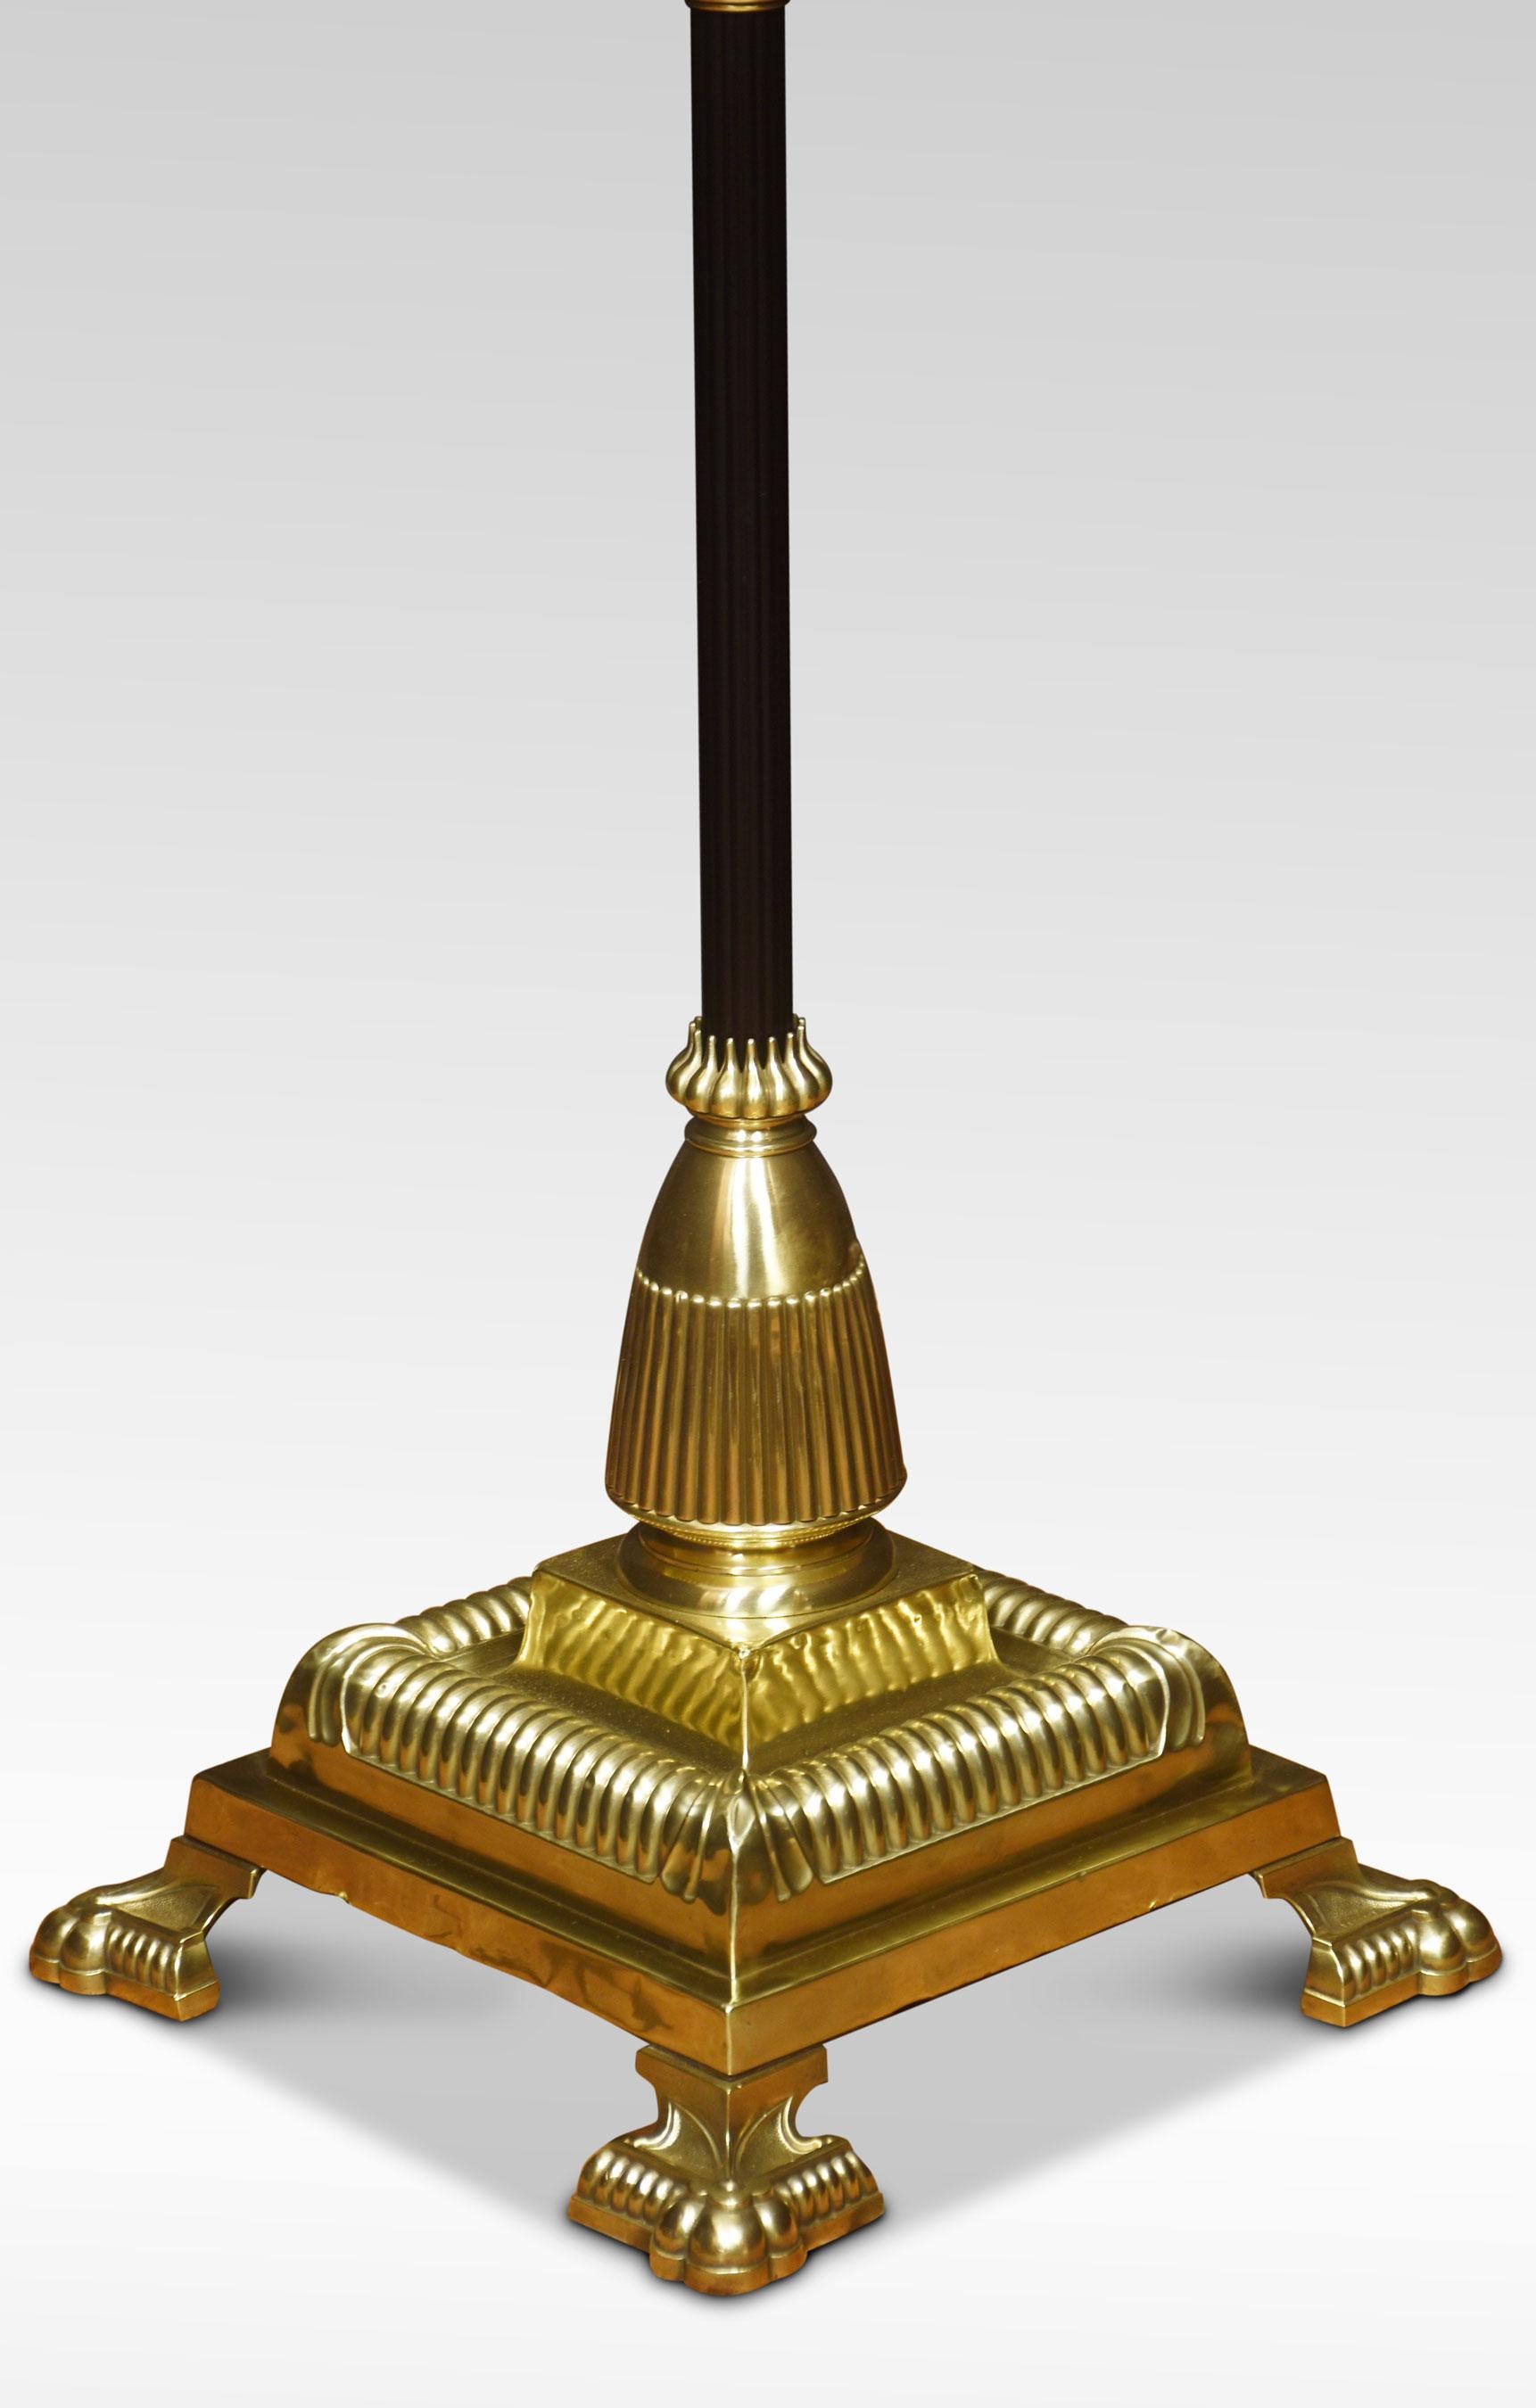 Stehlampe aus Messing des 19. Jahrhunderts. Mit dekoriertem Ölbehälter über der ebonisierten korinthischen Säule und verstellbarem Schaft, auf einem großen gestuften quadratischen Sockel mit Tatzenfüßen. Die Lampe wurde neu verkabelt. Umgerüstet für